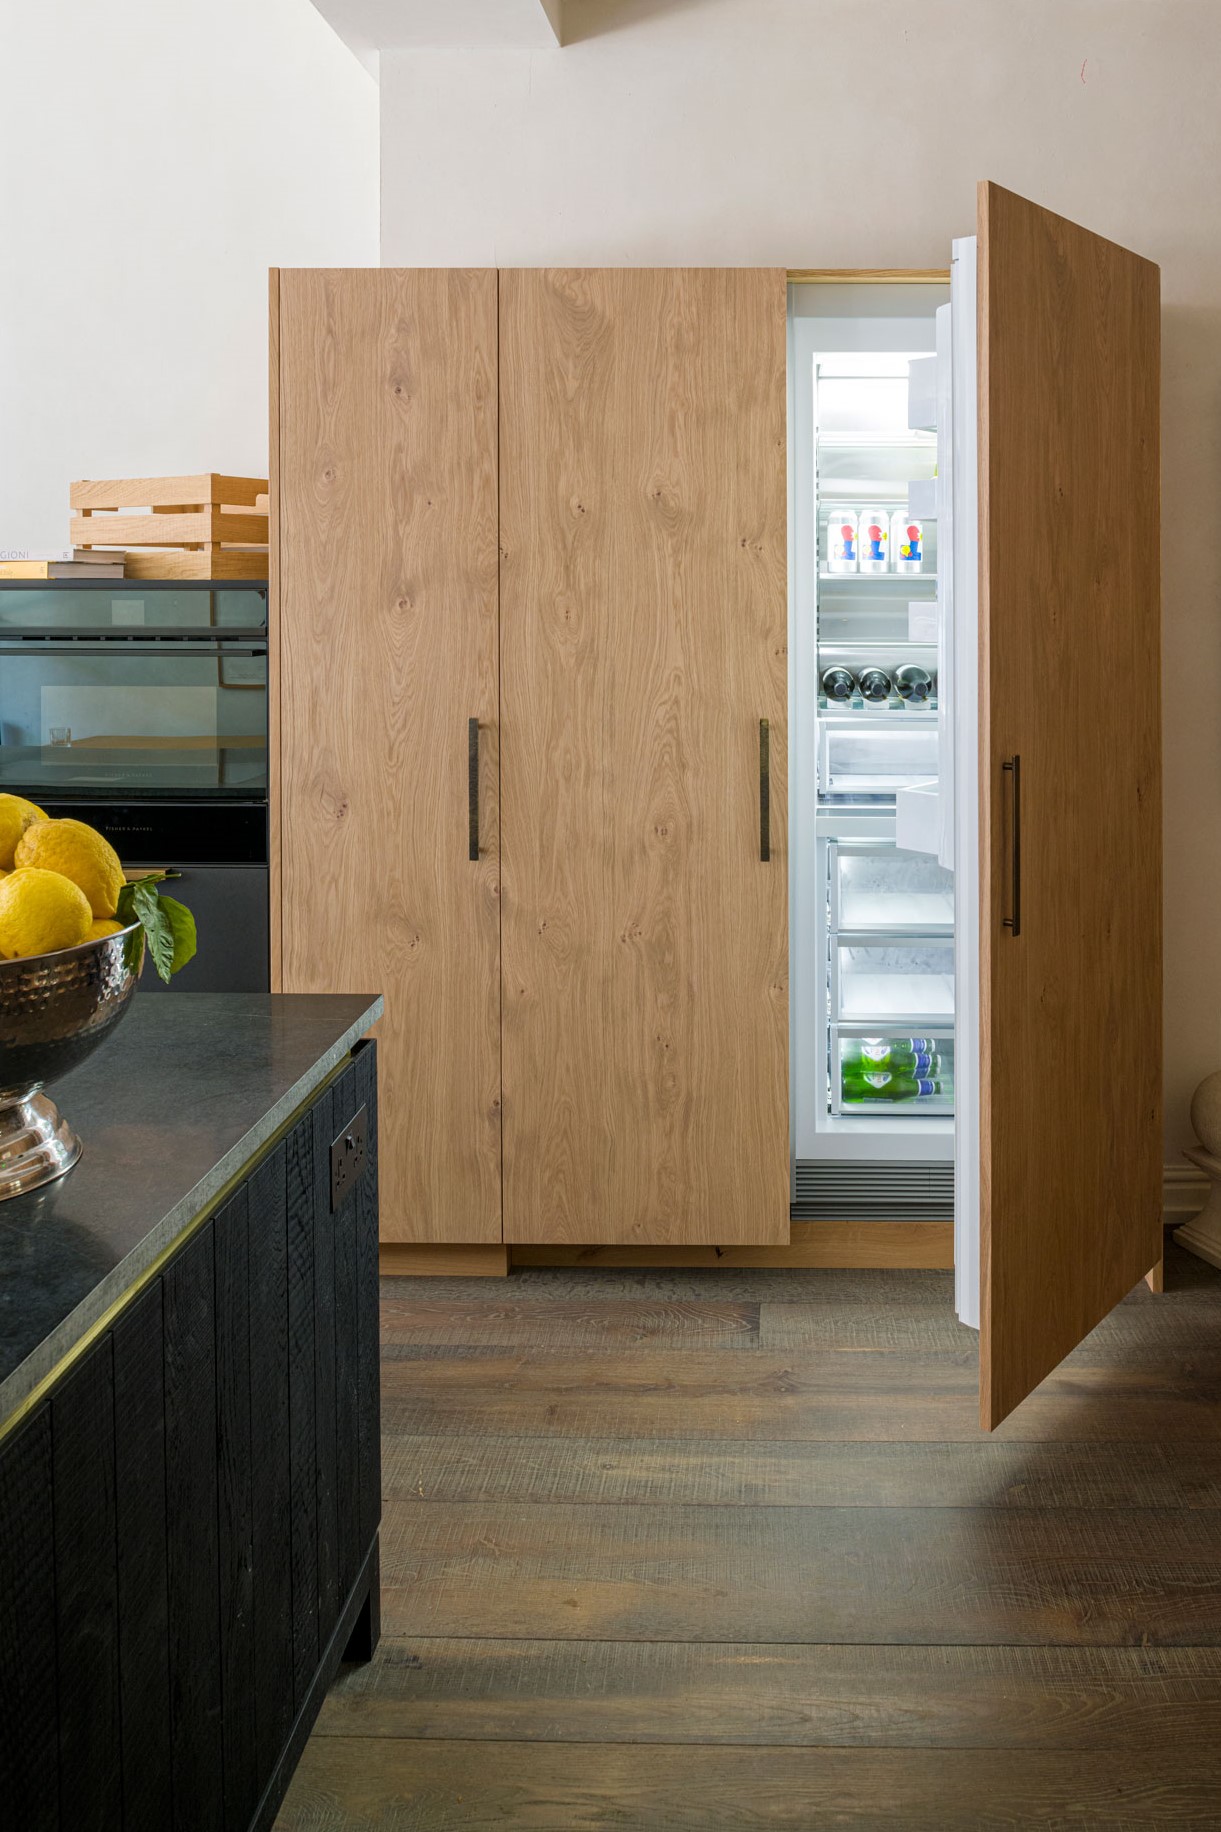 Kitchen fridge with door open